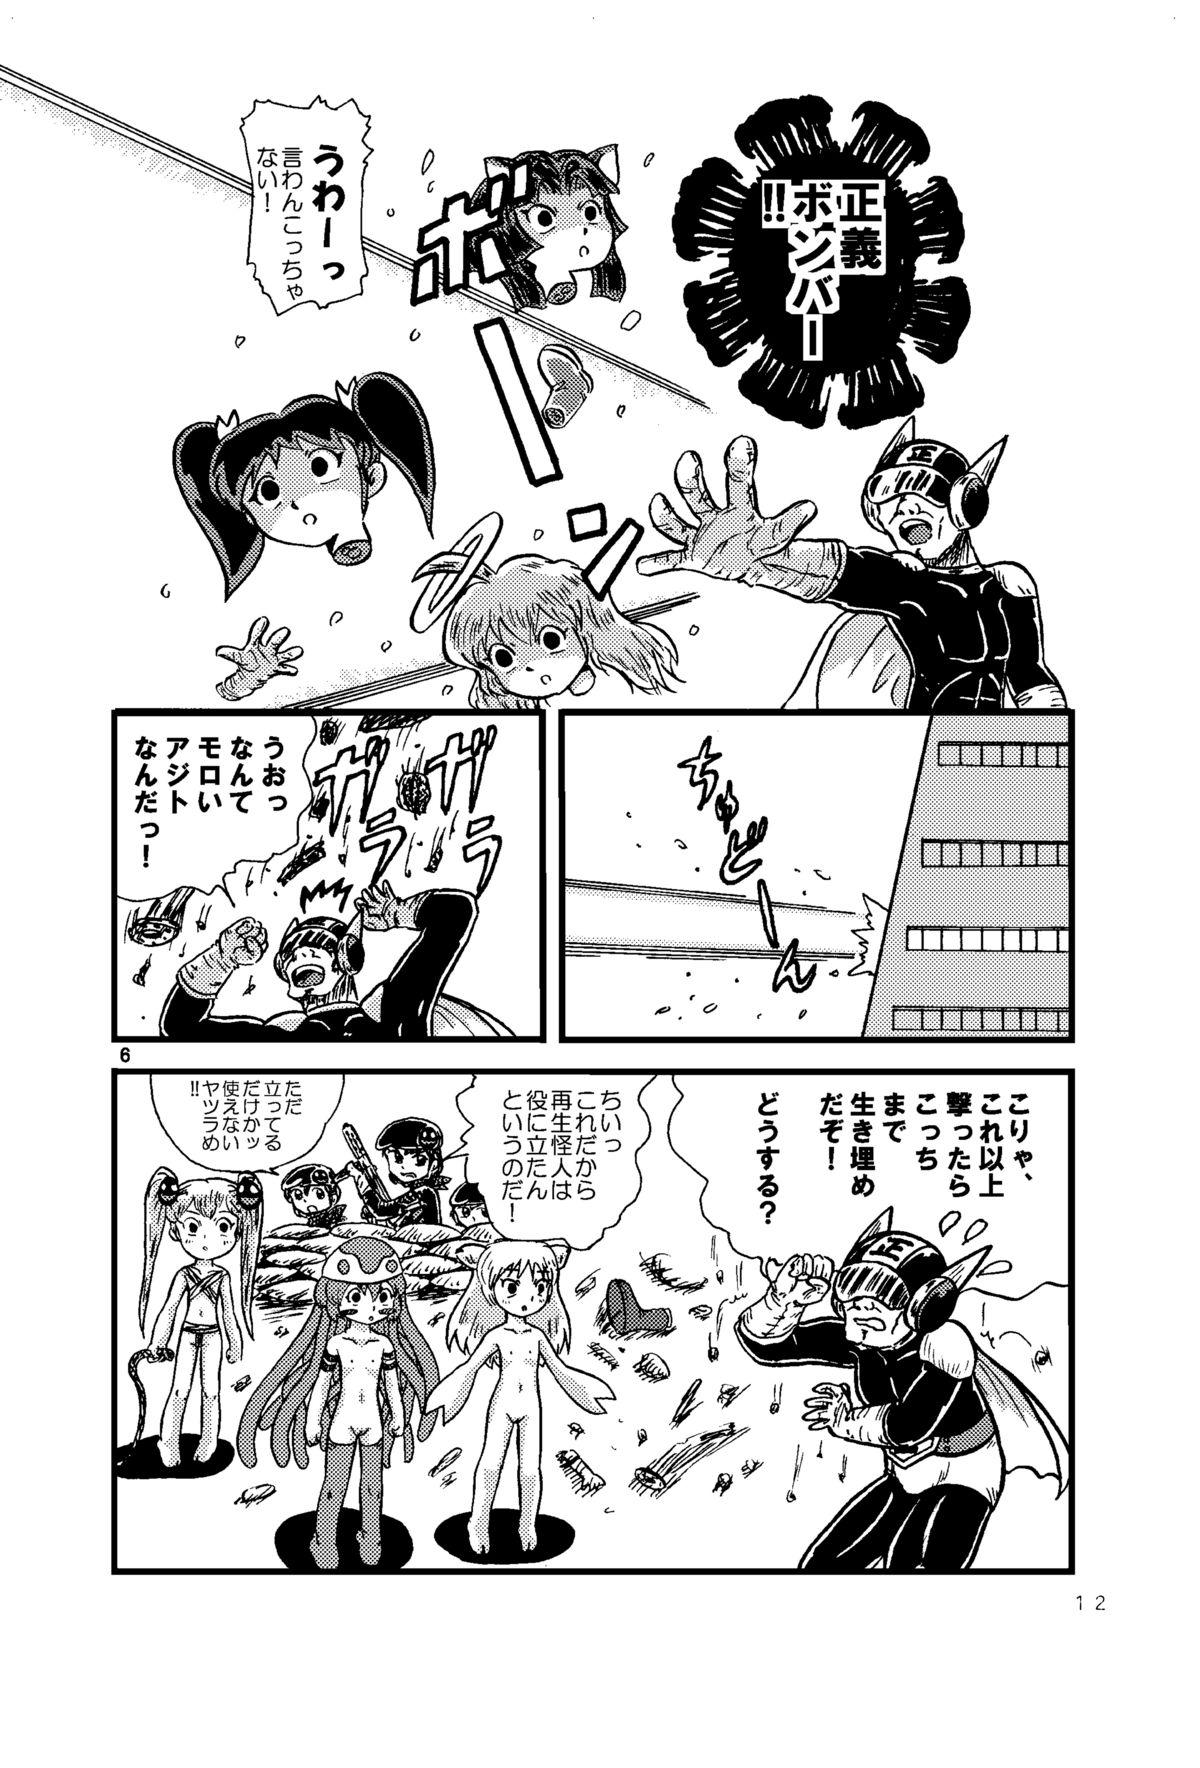 Spoon Tsurupeta Kenkyuu Houkokusho 005 "Dengeki Jigoku" - Turupeta Research Report Jeans - Page 11